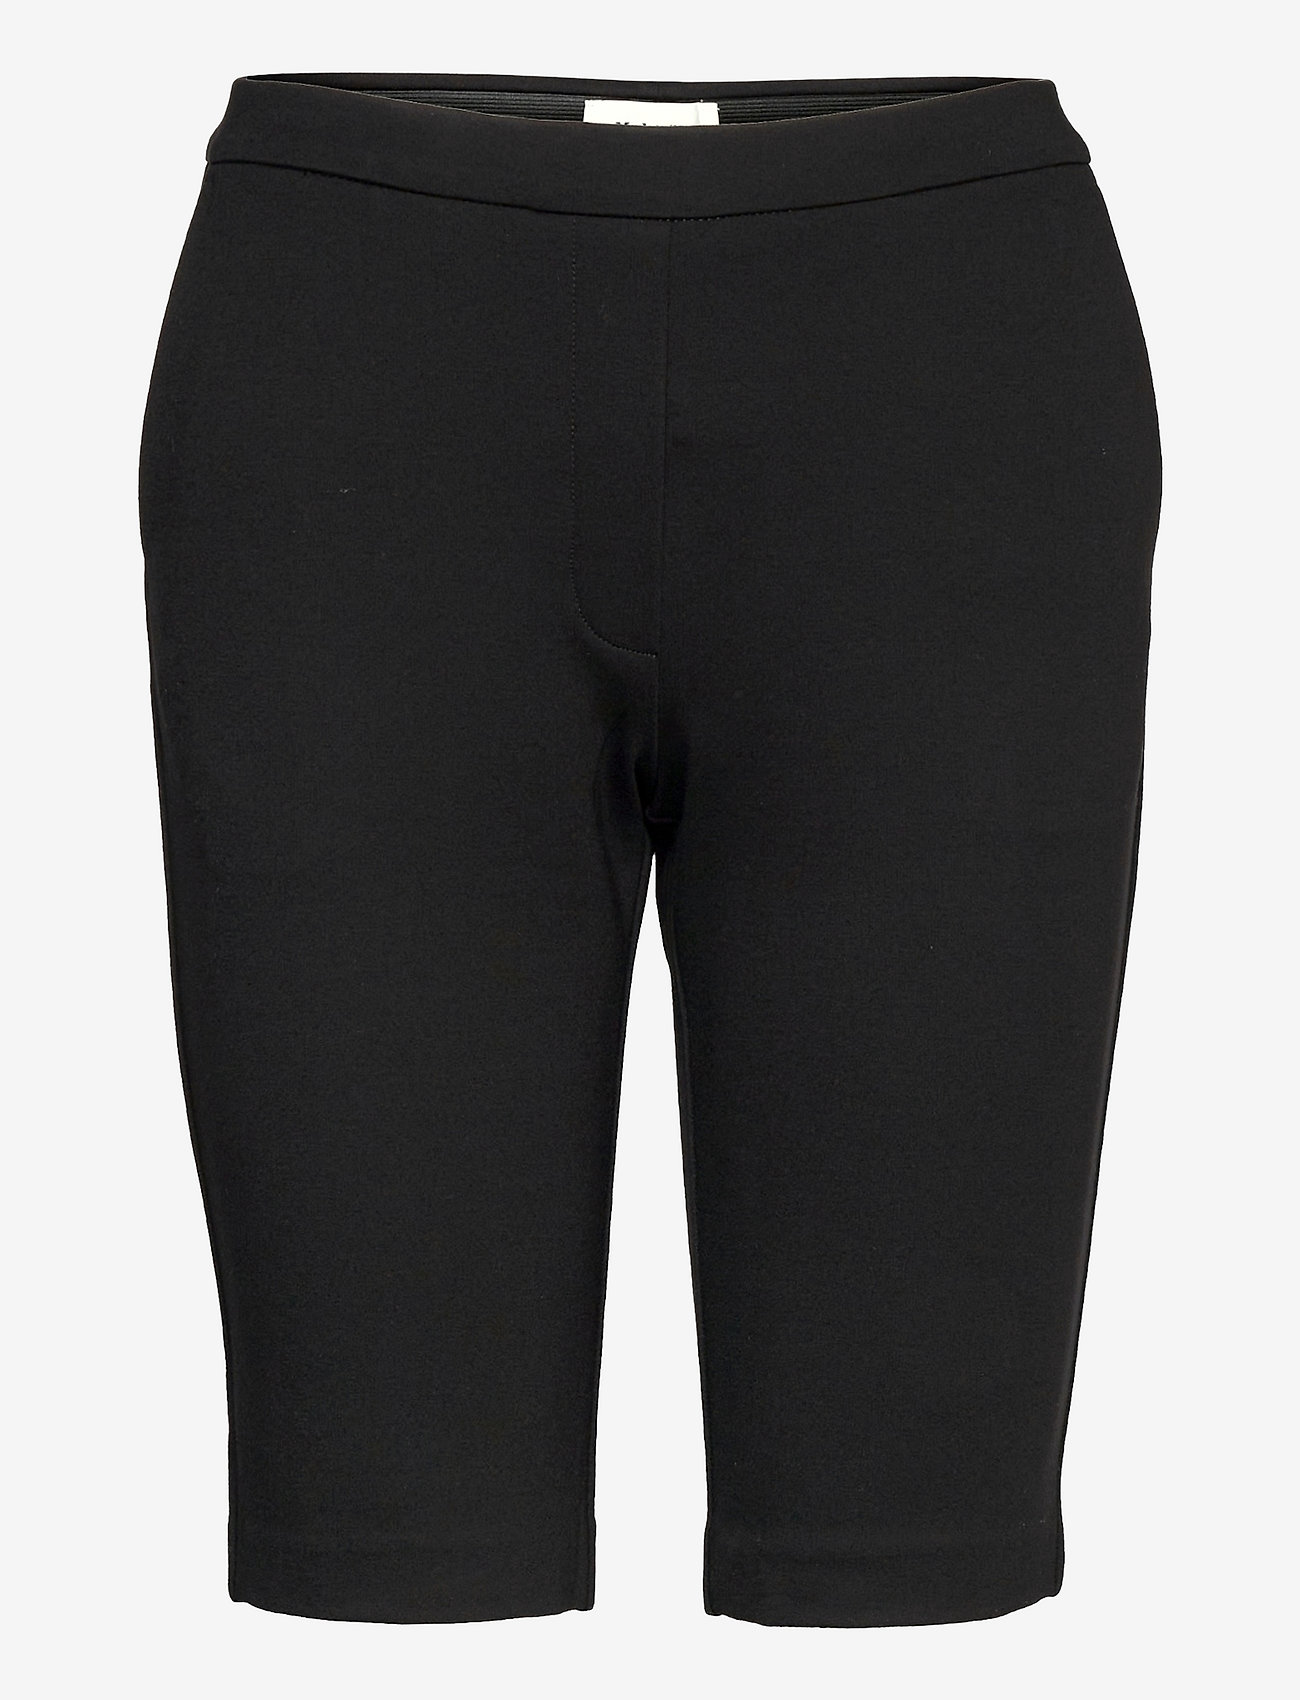 Modström - Tanny shorts - sykkelshorts - black - 0